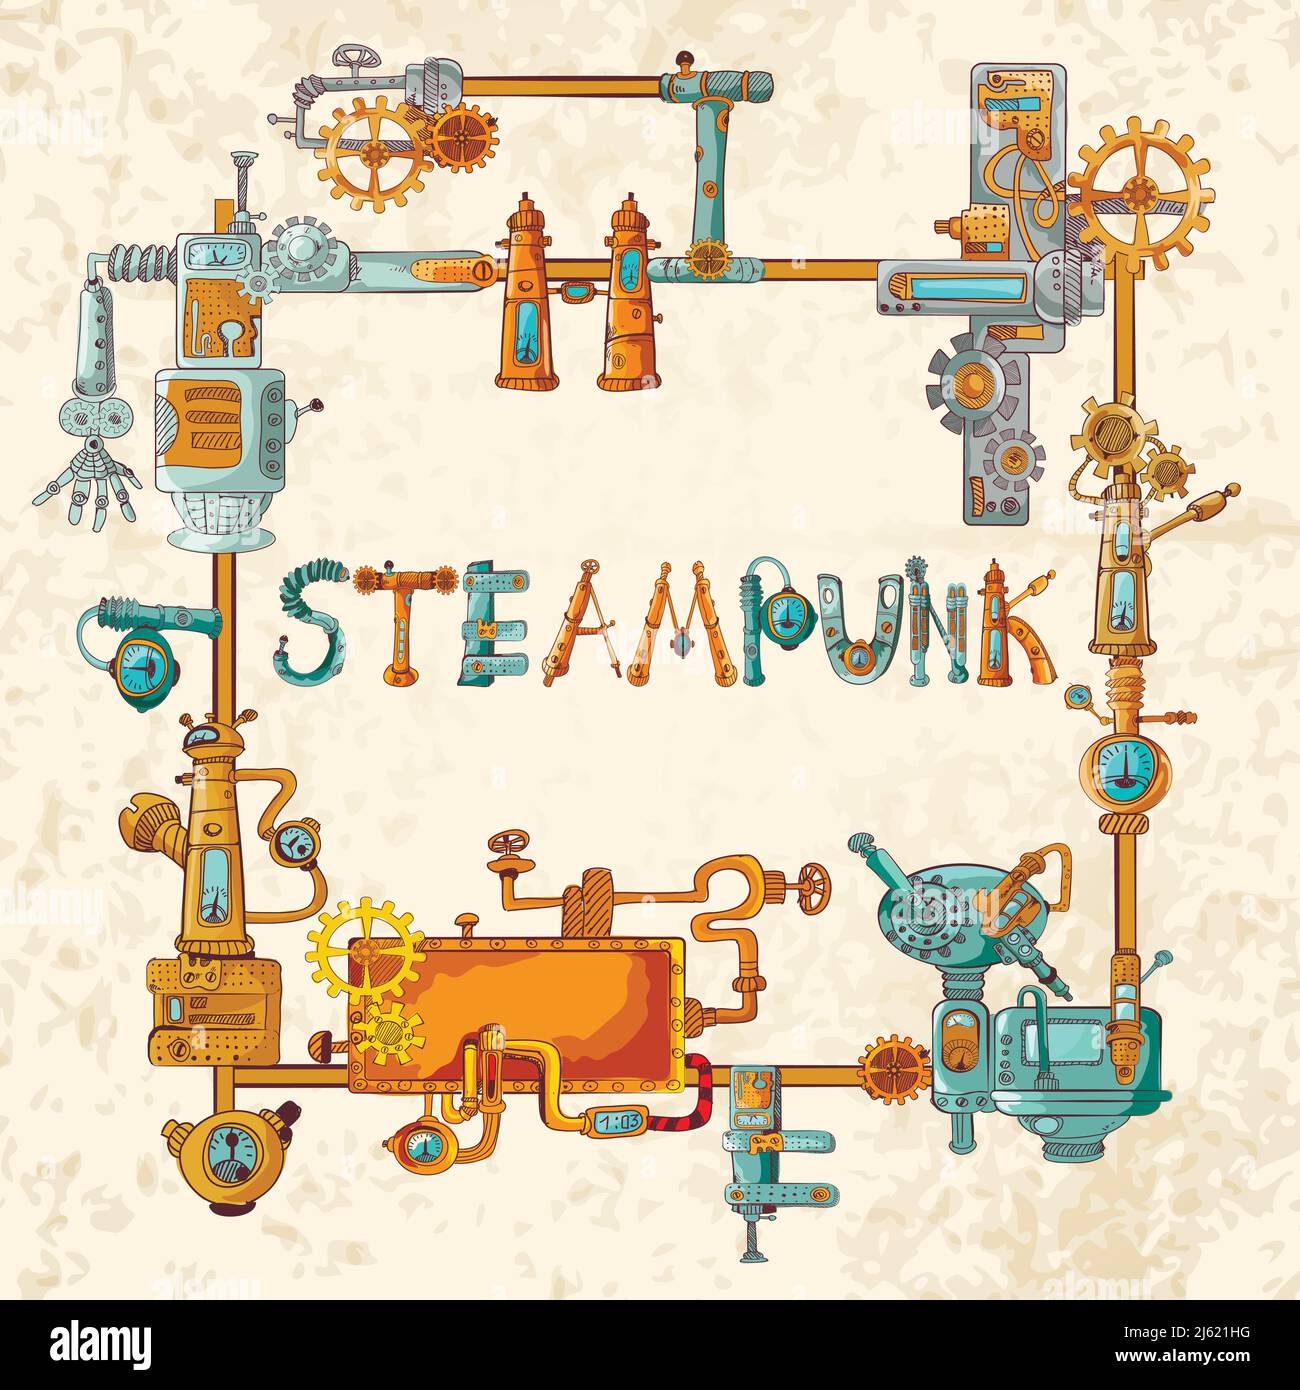 Cadre Steampunk avec machines industrielles engrenages chaînes et éléments techniques illustration vectorielle Illustration de Vecteur